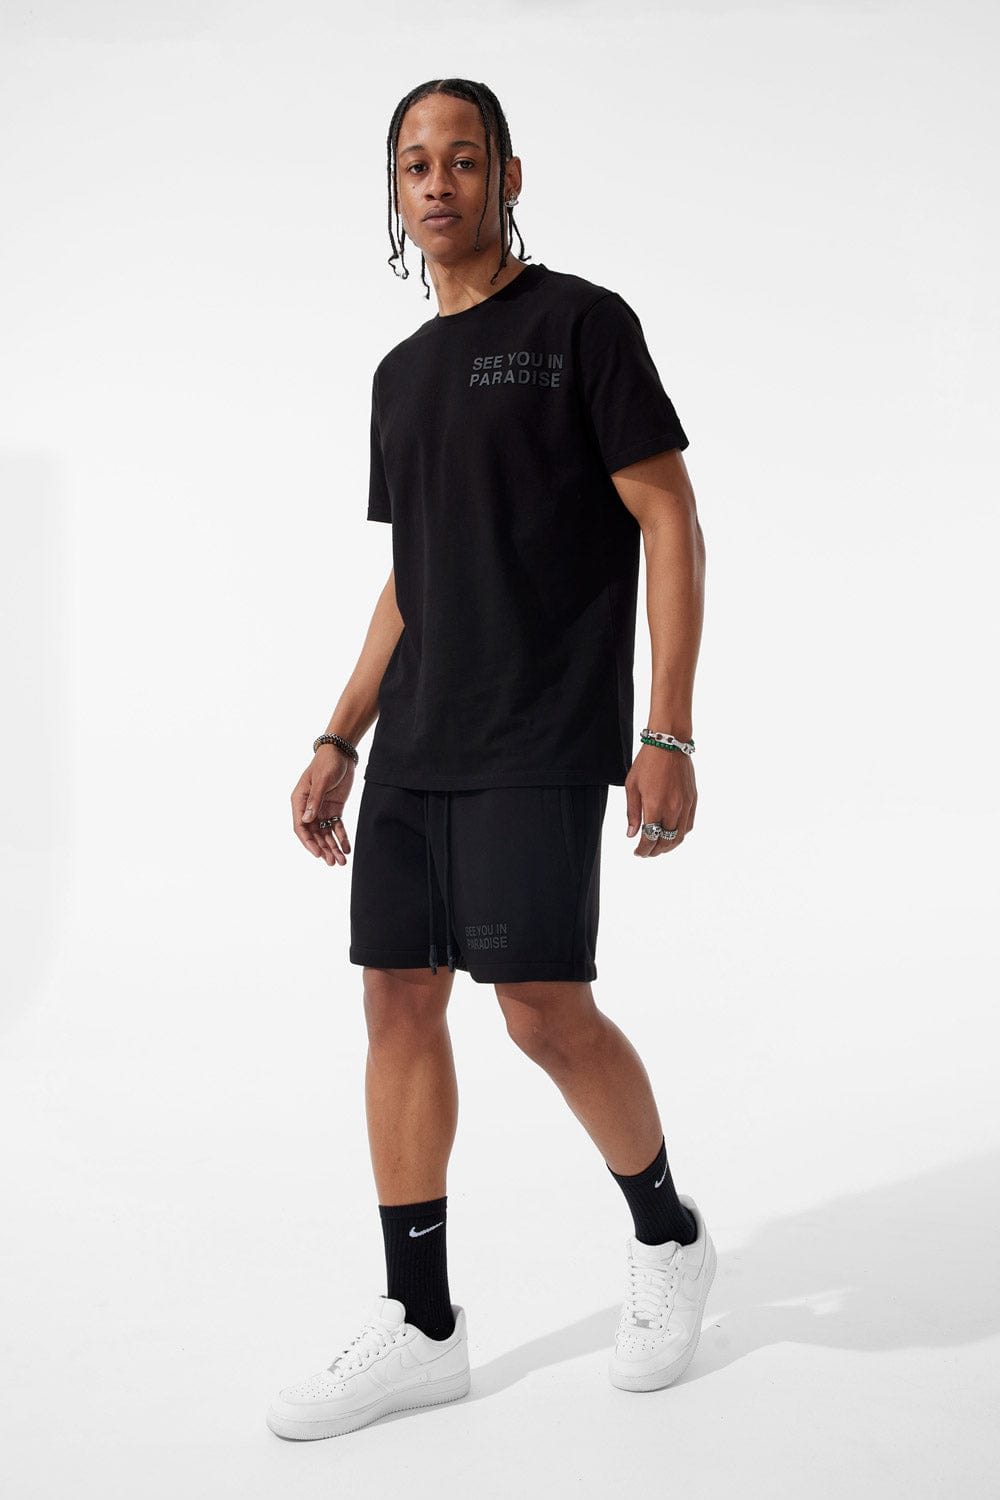 Jordan Craig Retro - Paradise Tonal Shorts (Black)